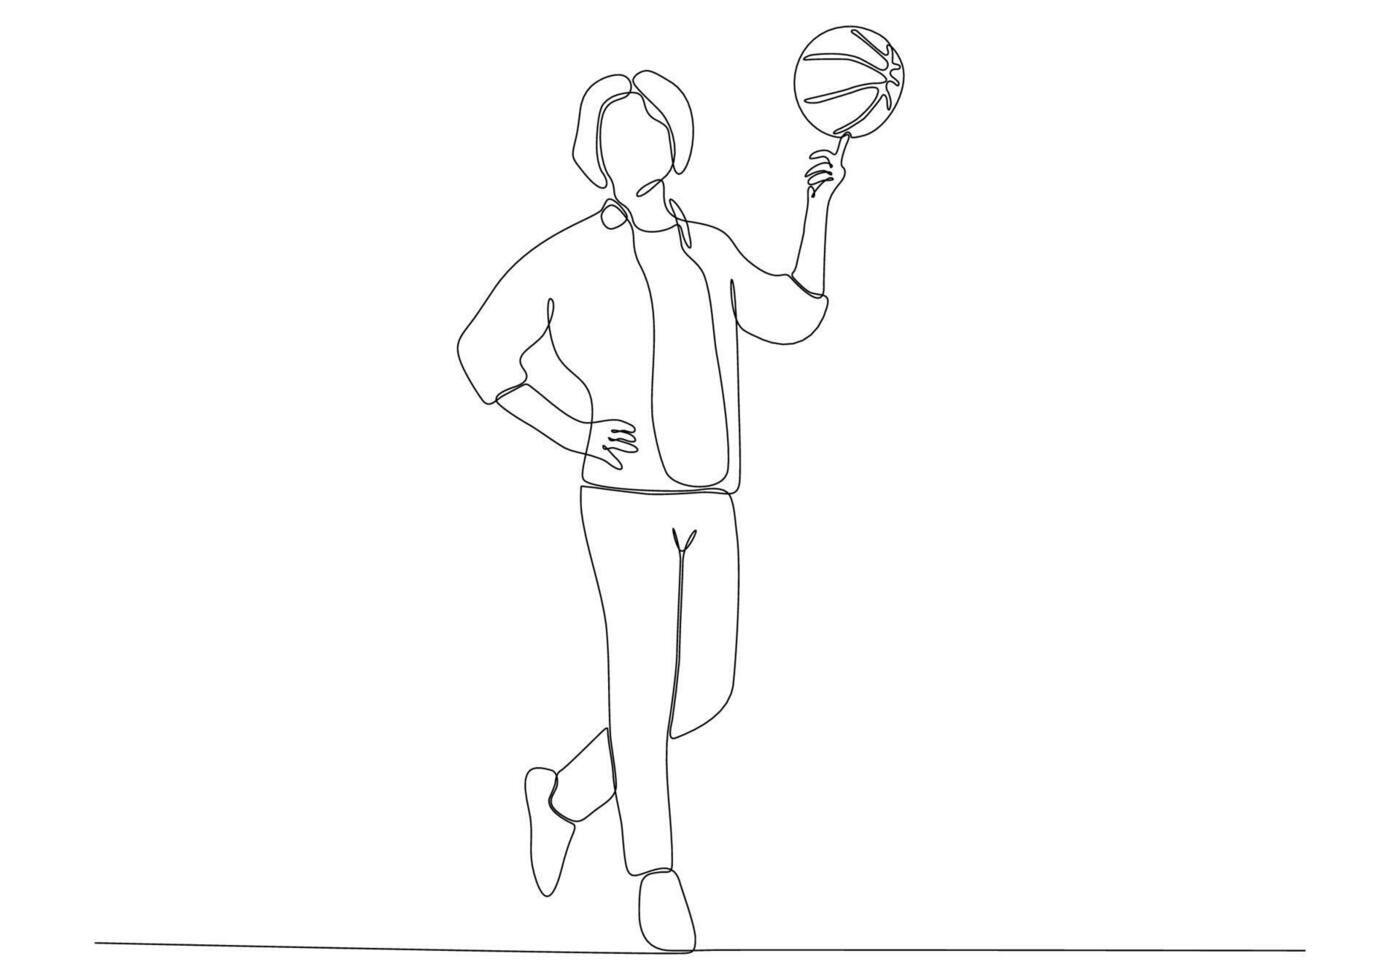 arte de línea continua del hombre jugando baloncesto vector